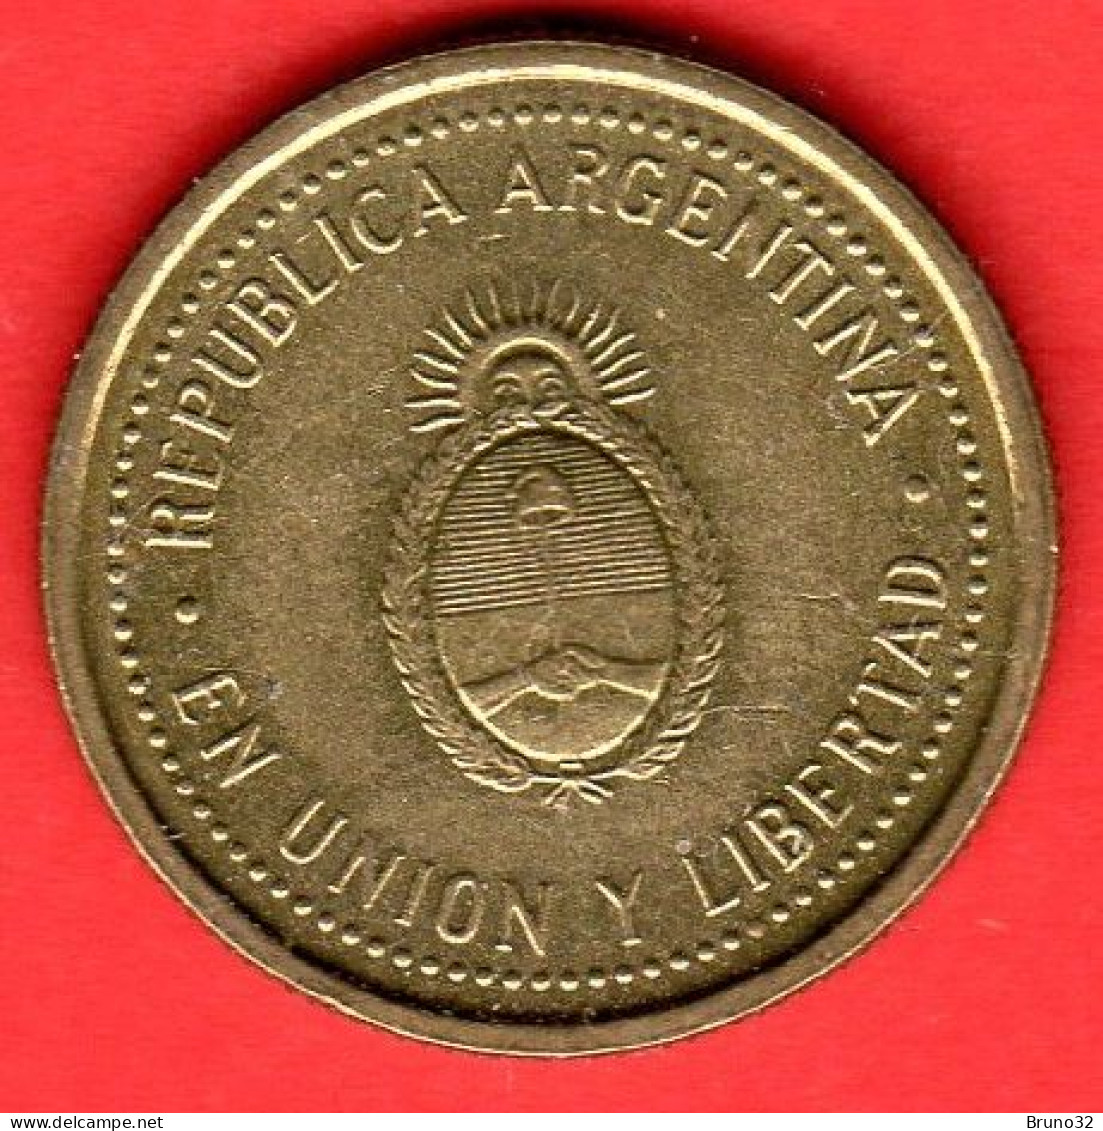 ARGENTINA - 1993 - 10 Centavos - QFDC/aUNC - Come Da Foto - Argentinië